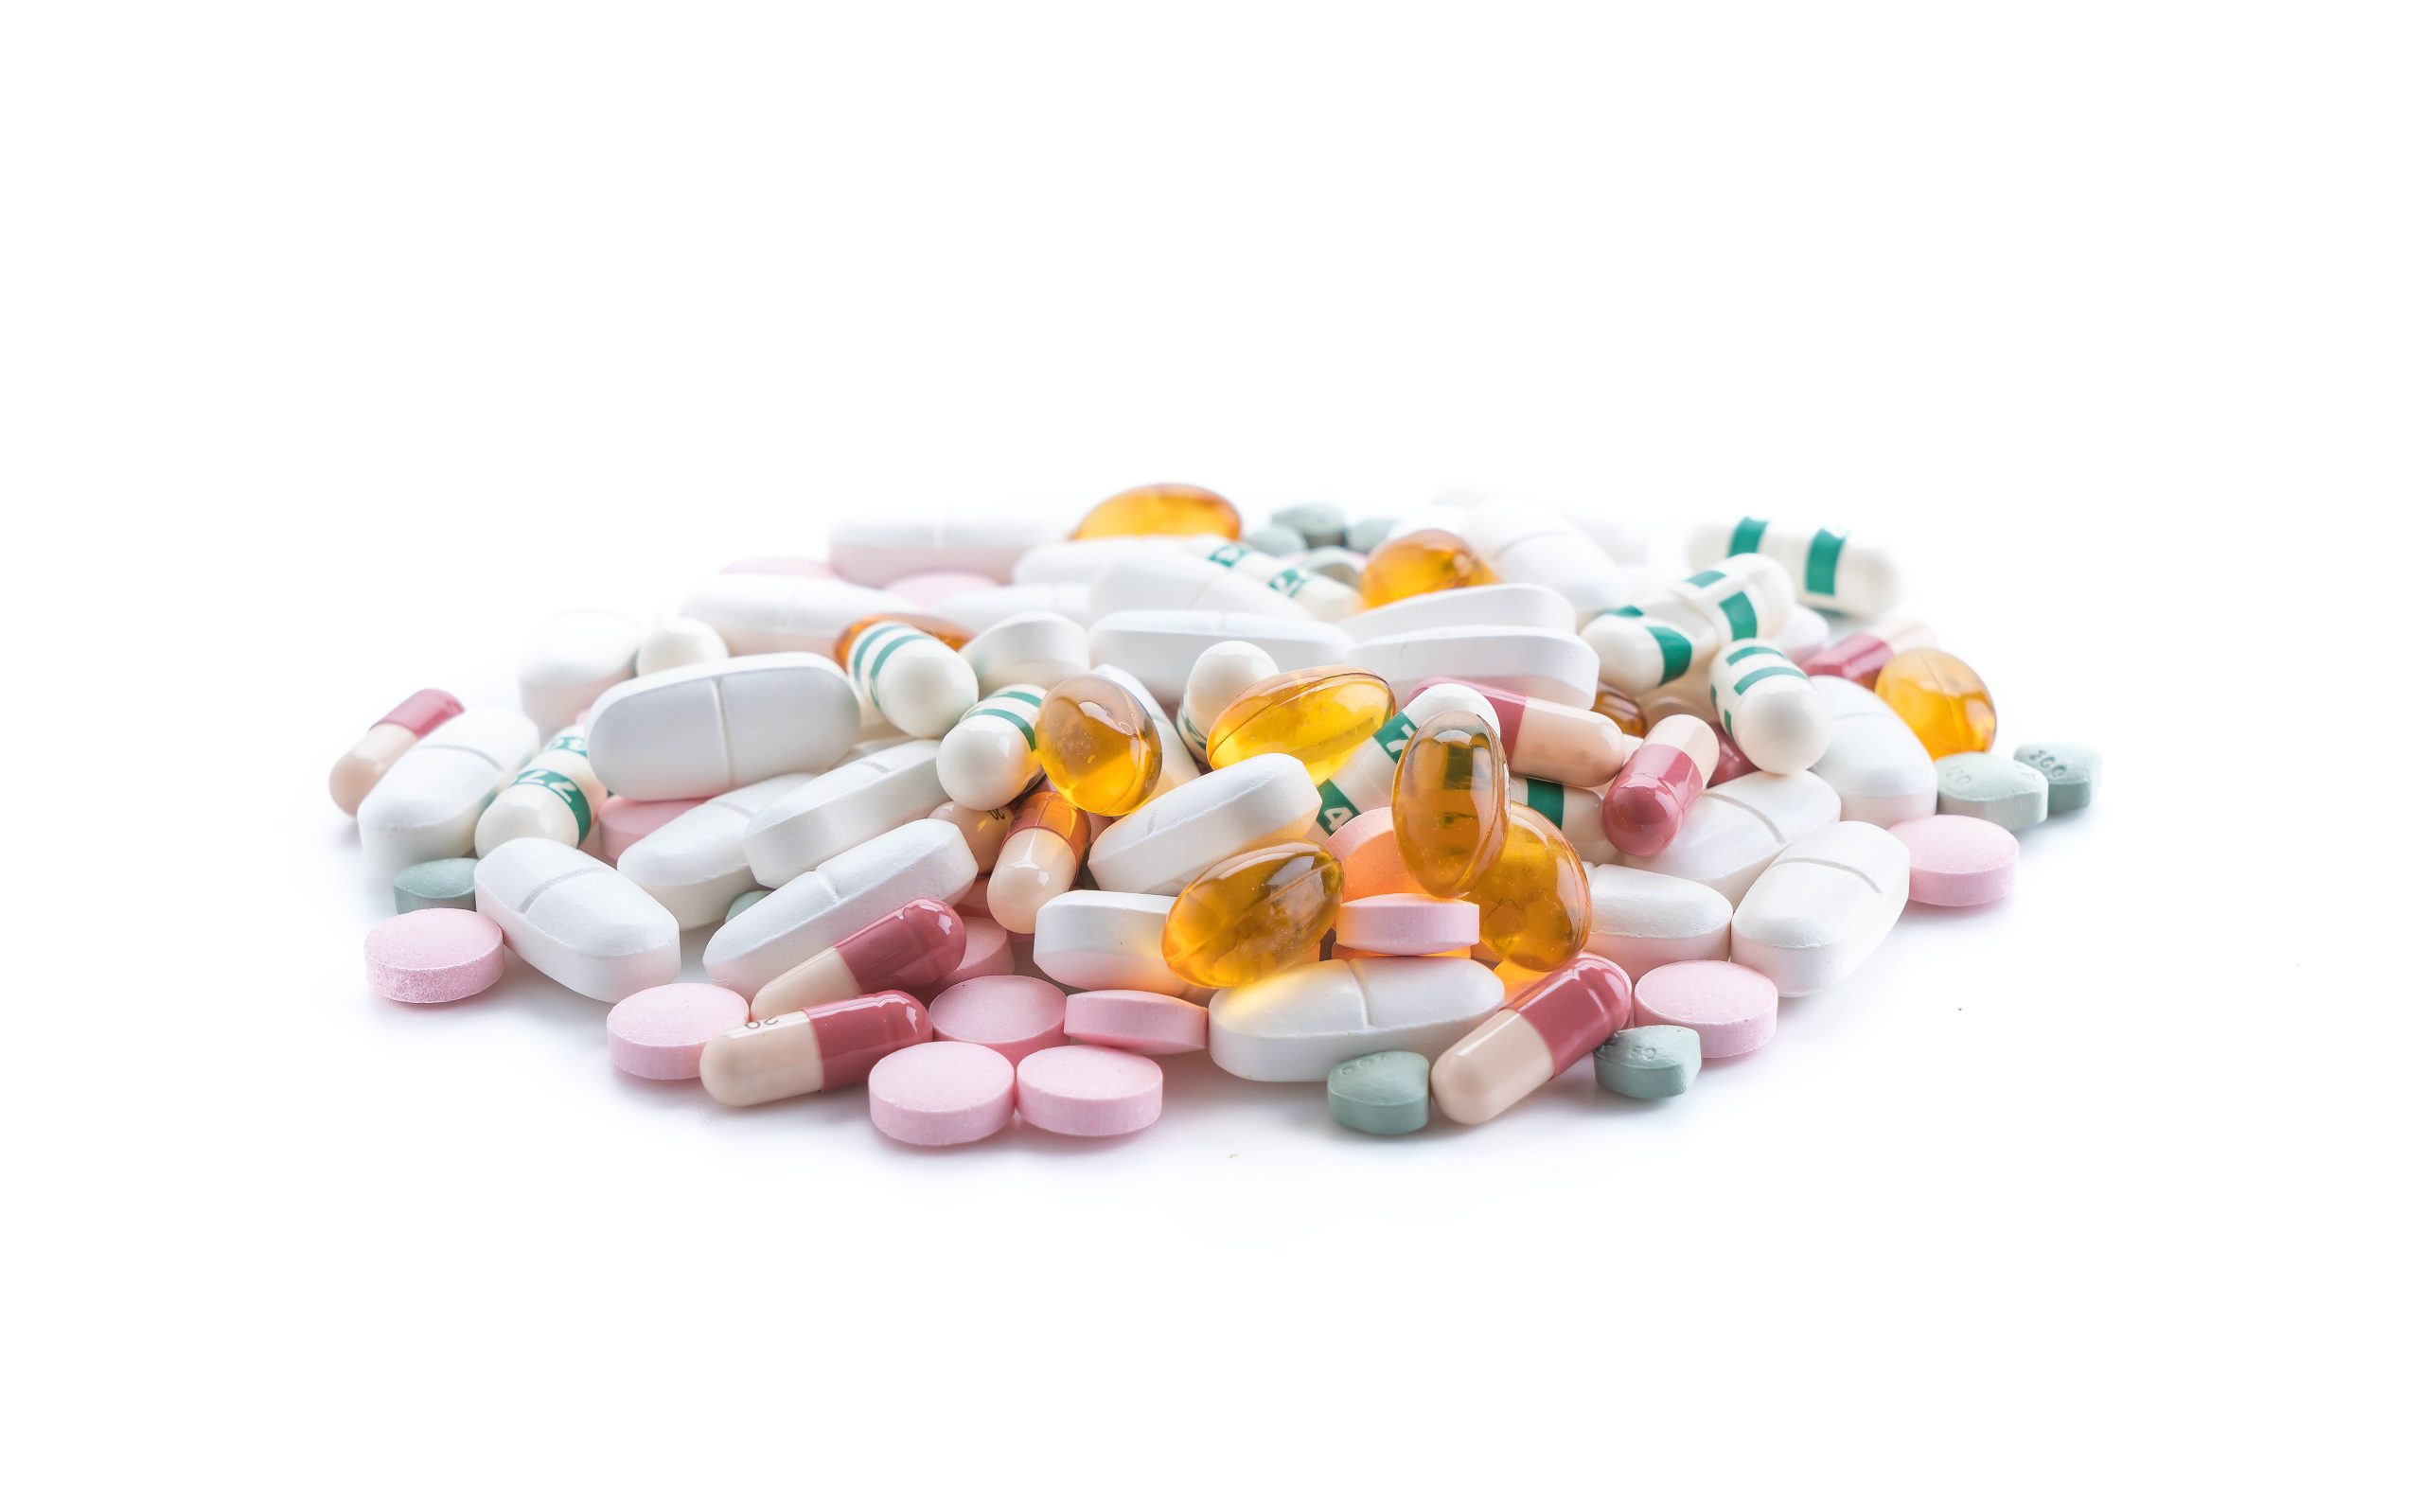 packings-pills-capsules-medicines-min-92b620ea